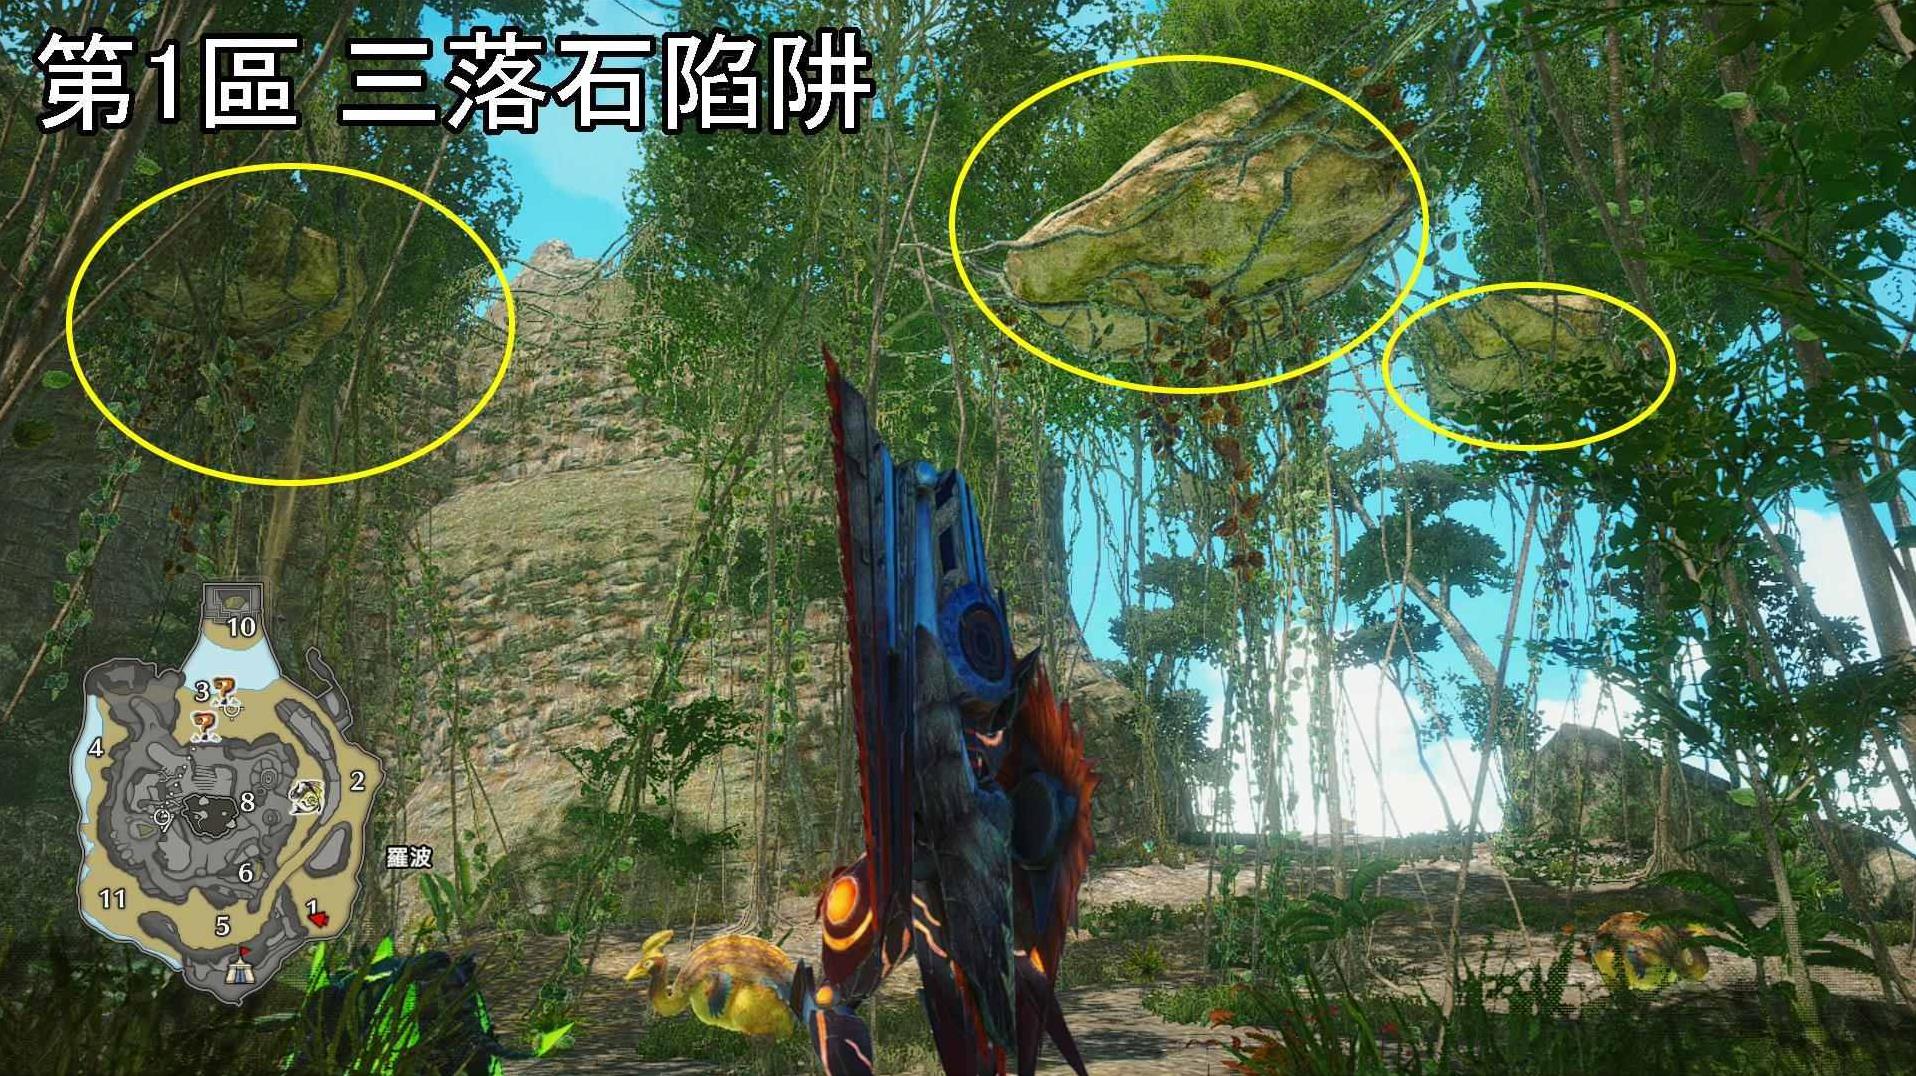 《怪物猎人崛起》曙光DLC密林环境生物与陷阱位置介绍 - 第11张